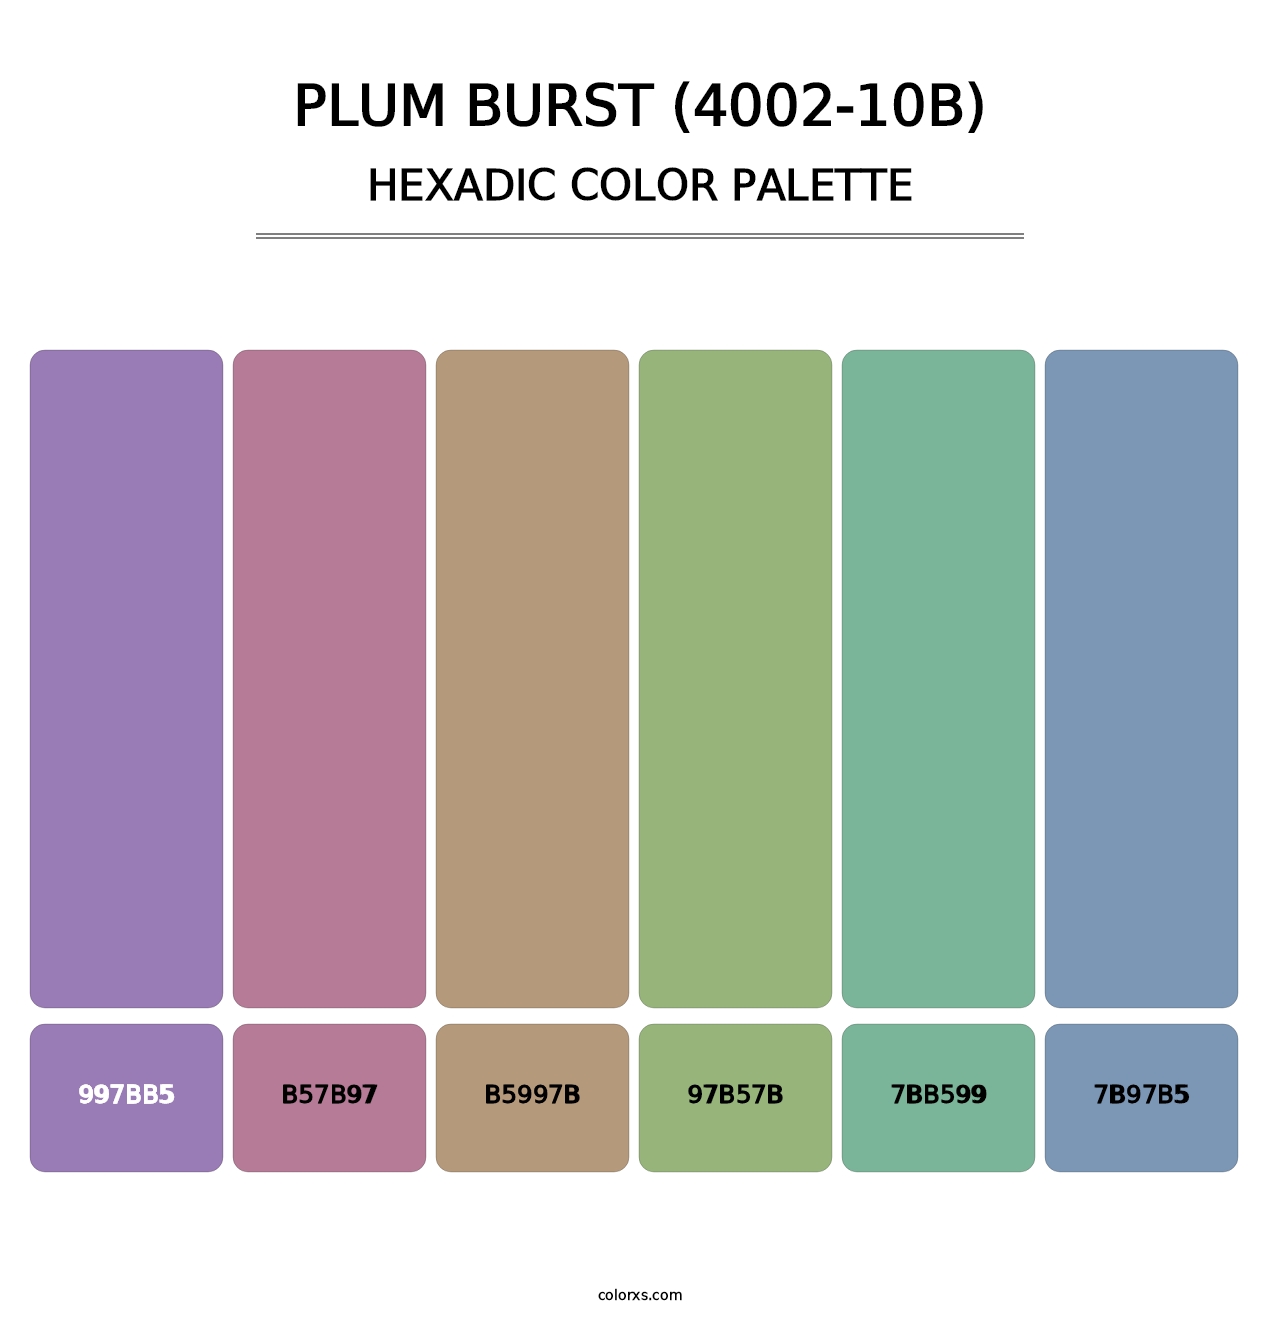 Plum Burst (4002-10B) - Hexadic Color Palette